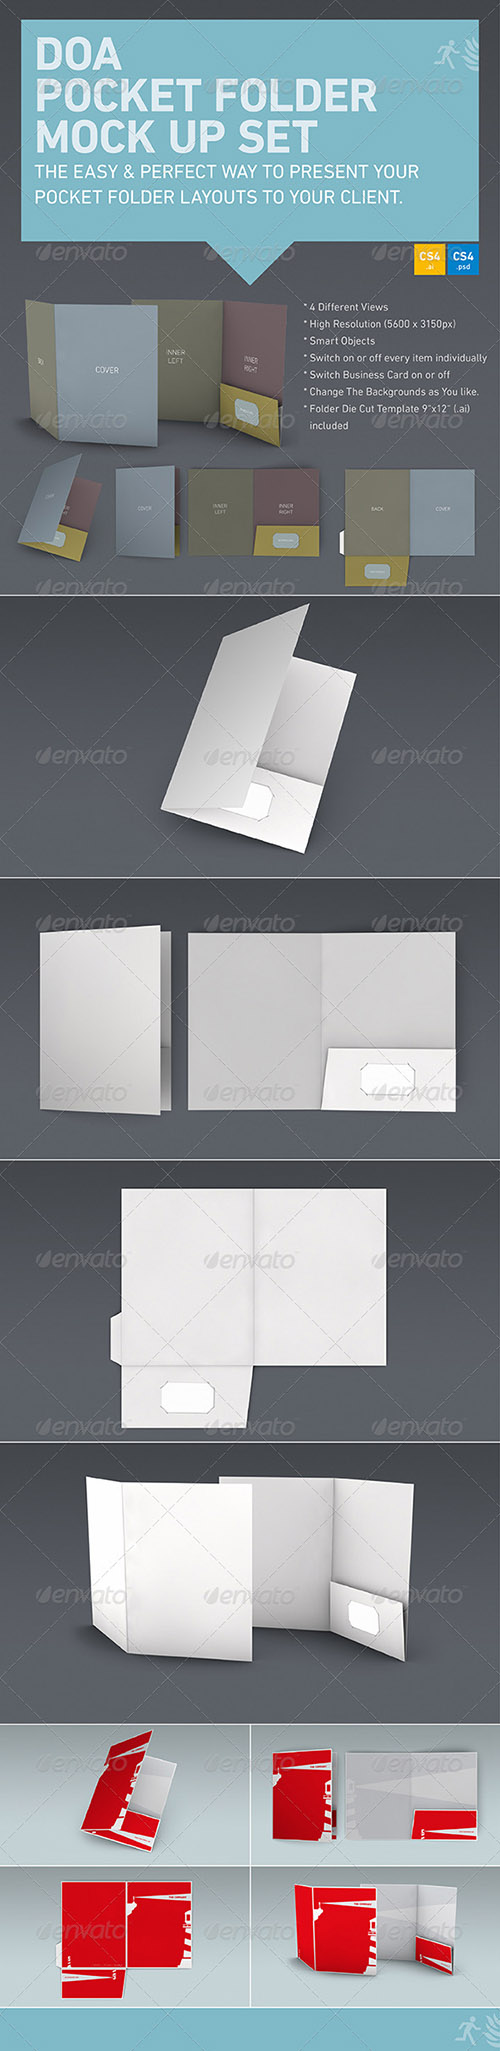 GraphicRiver - DOA Pocket Folder Mock Up Set